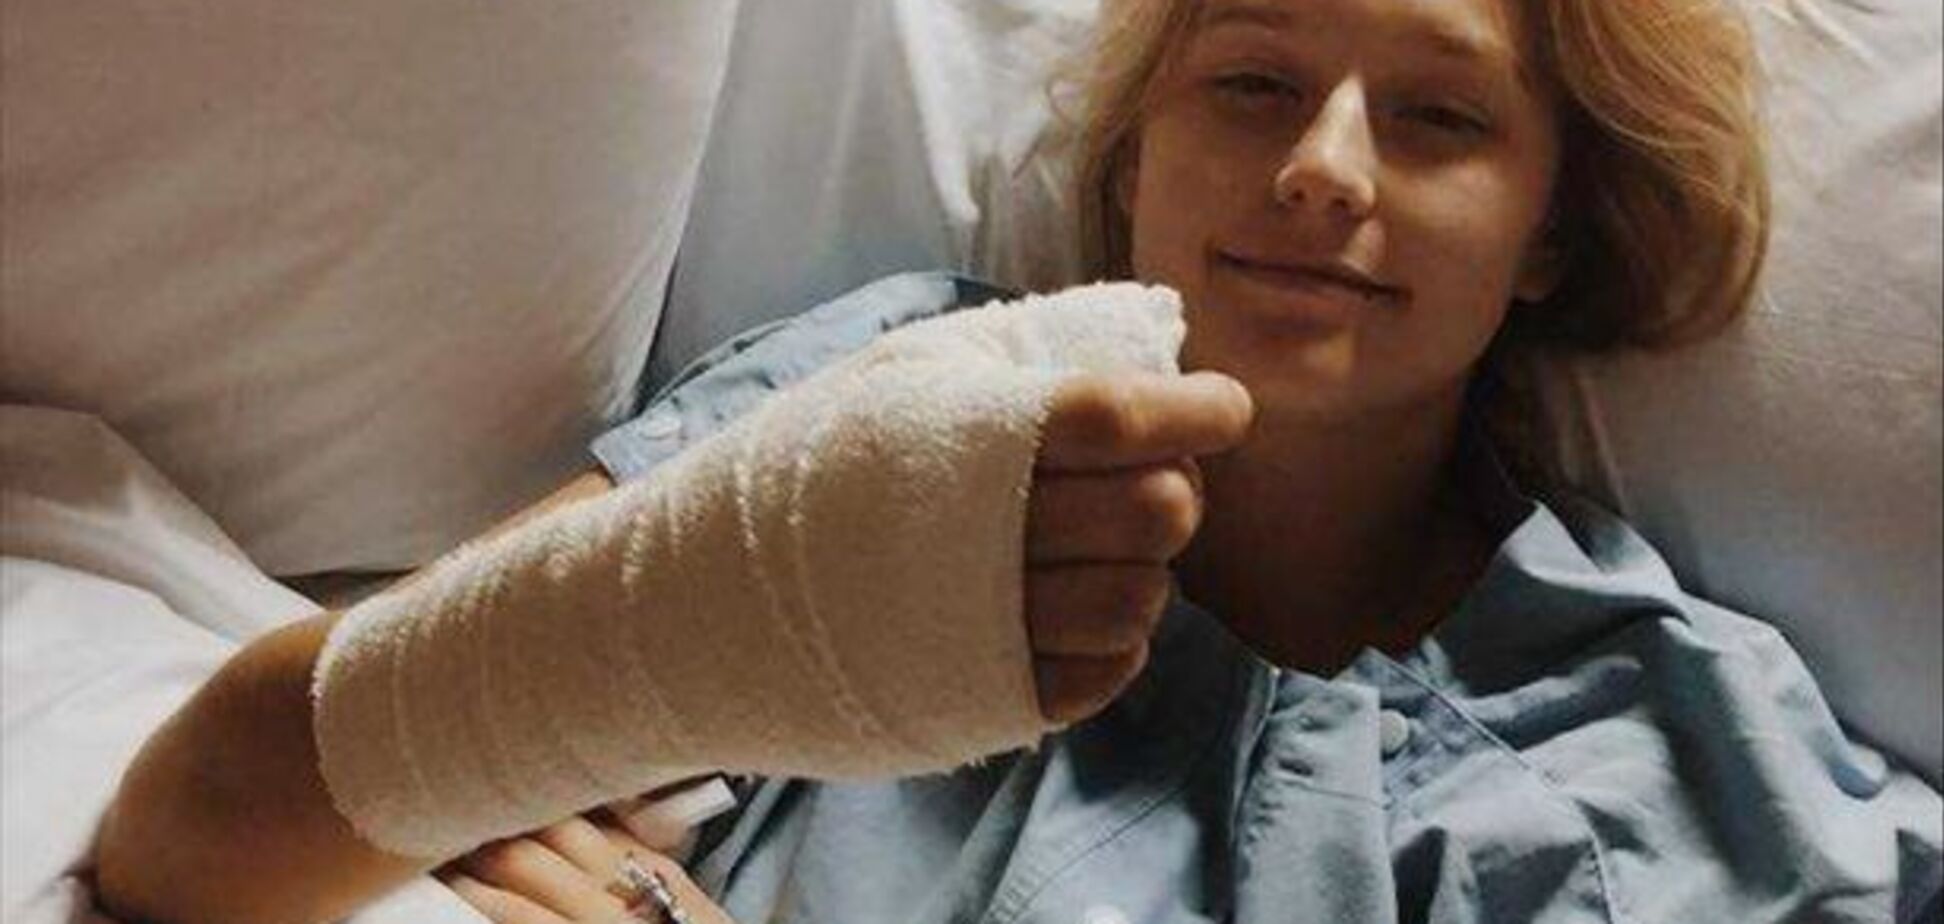 Звичка гризти нігті довела дівчину до раку: як це сталося